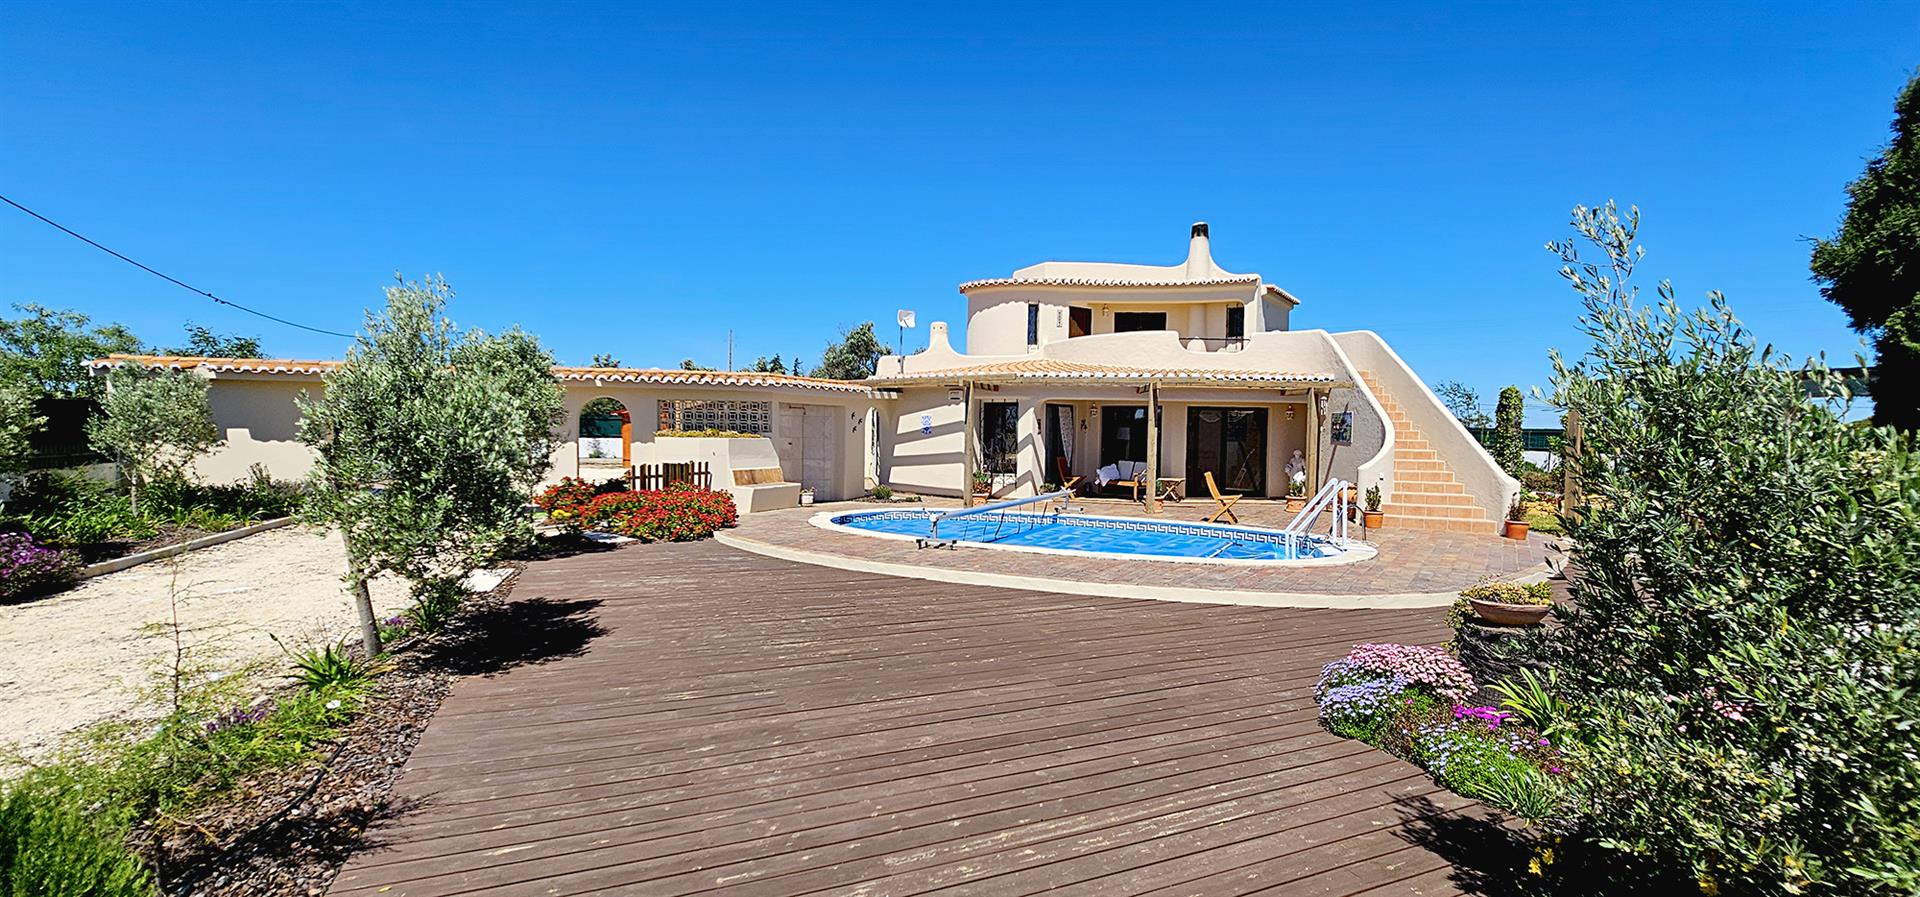 Velkommen til dit fremtidige hjem i smukke Algarve